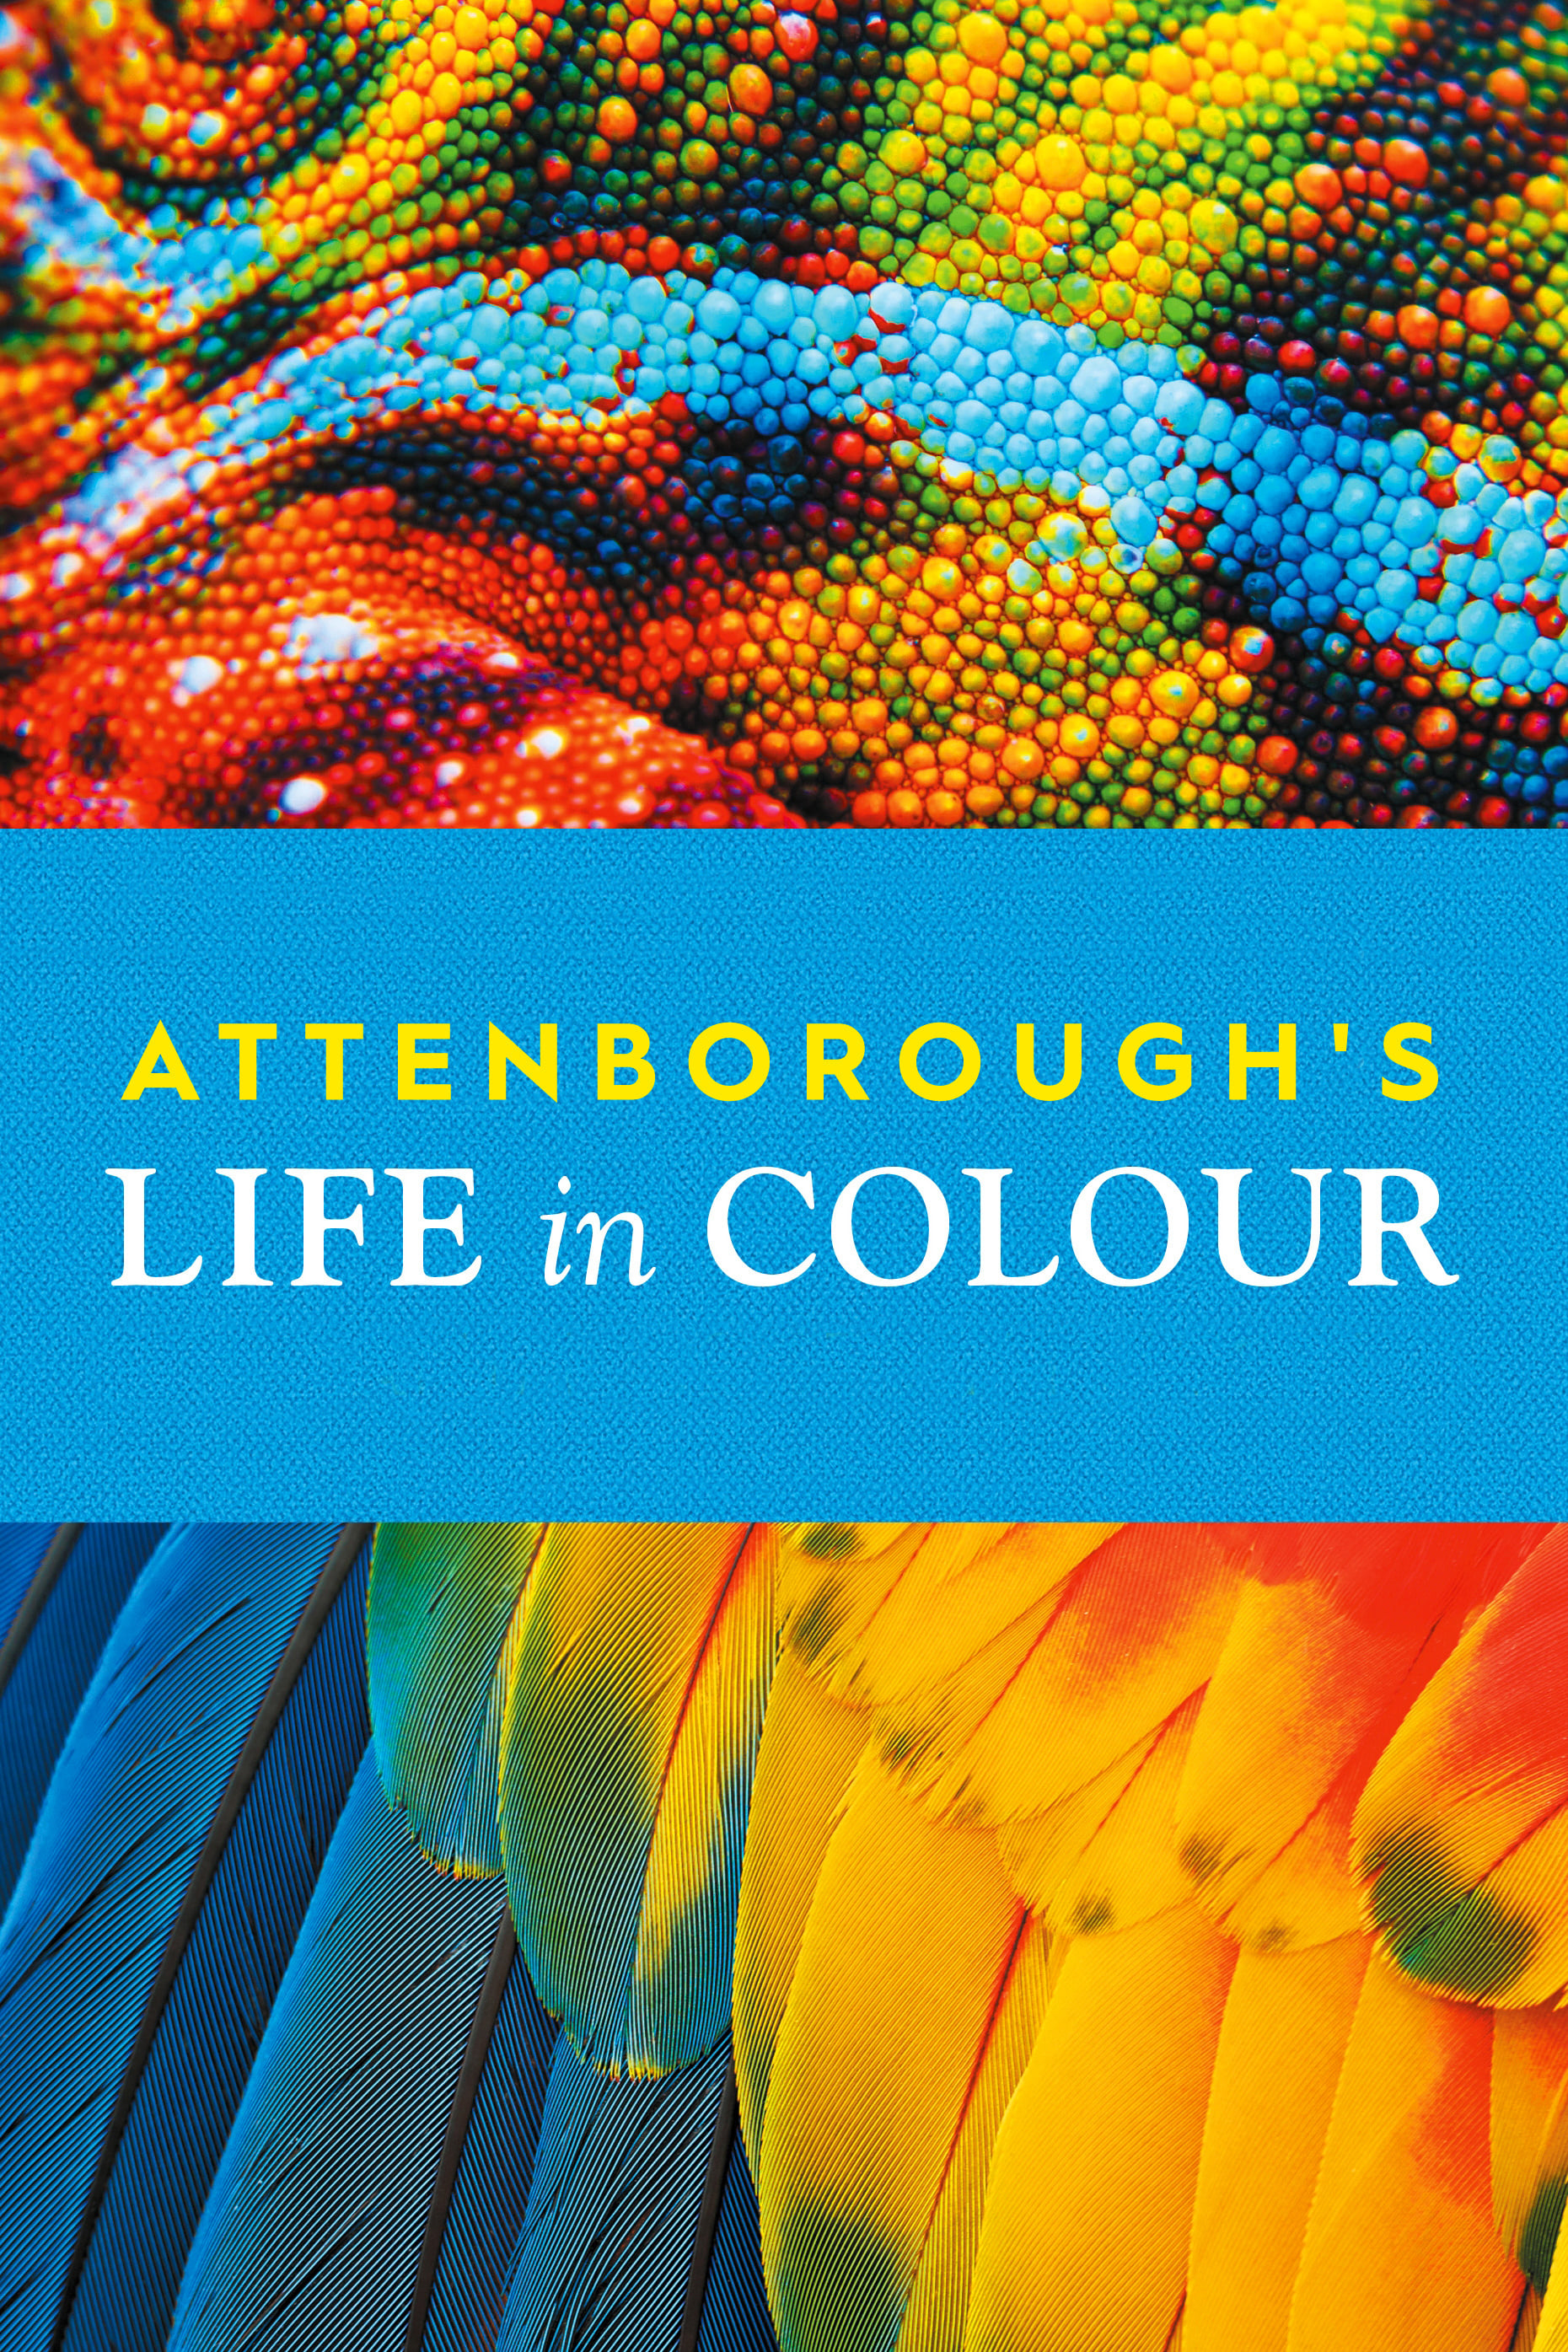 La vida a todo color, con David Attenborough